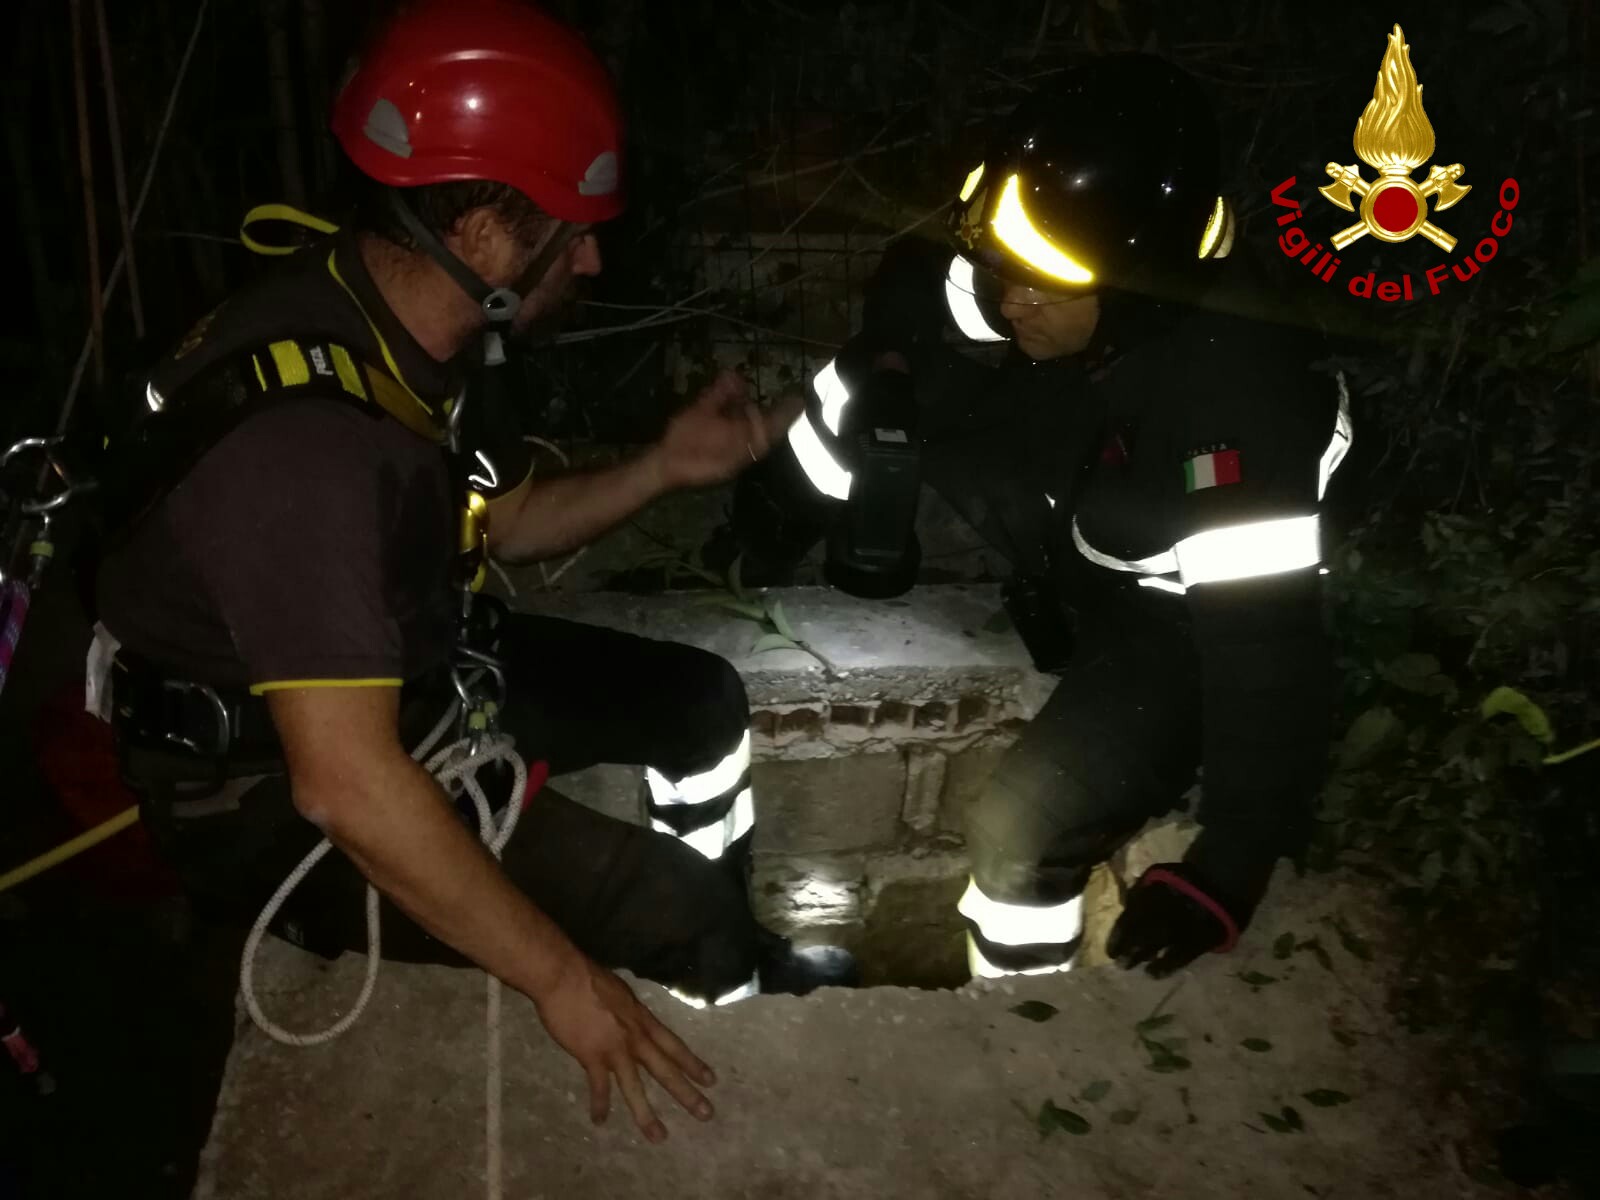 Salvato dai pompieri il piccolo chihuahua caduto in un pozzo